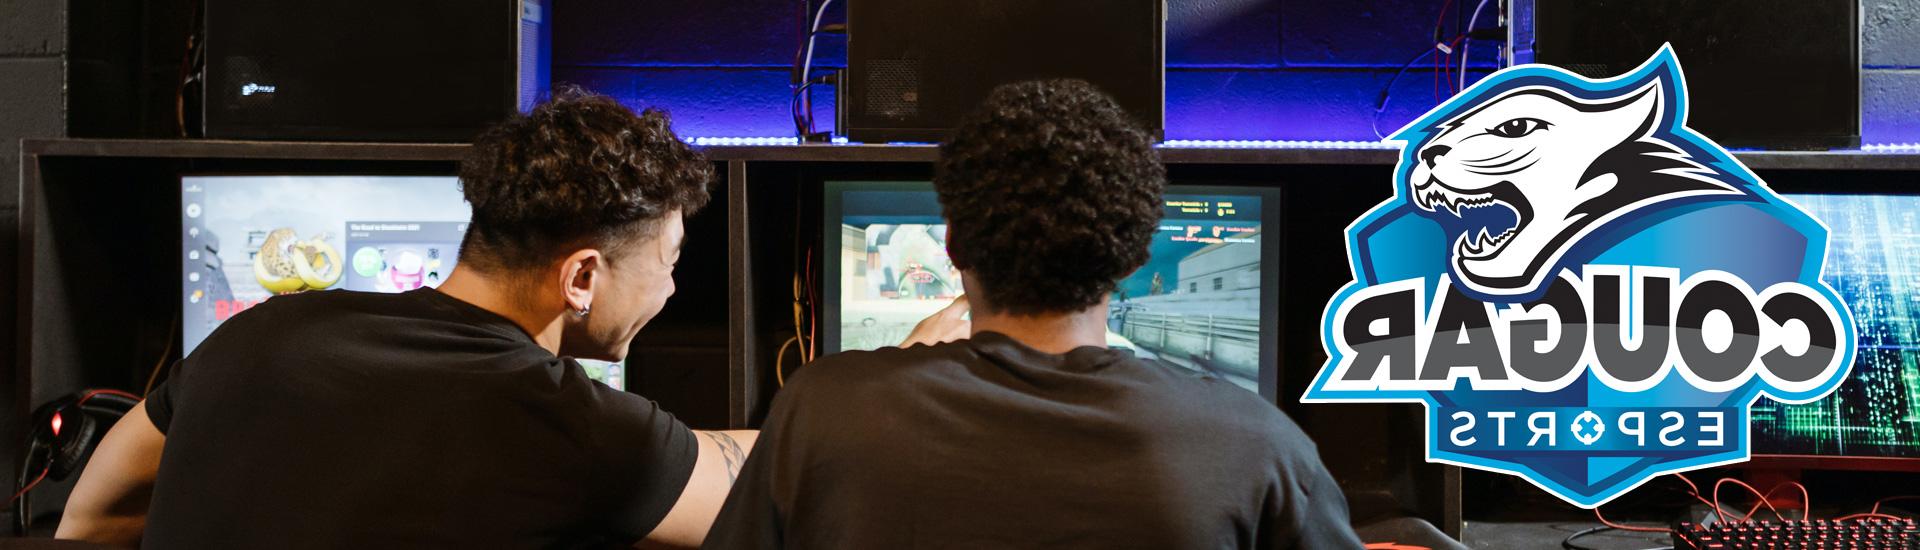 两个男人在玩电子游戏